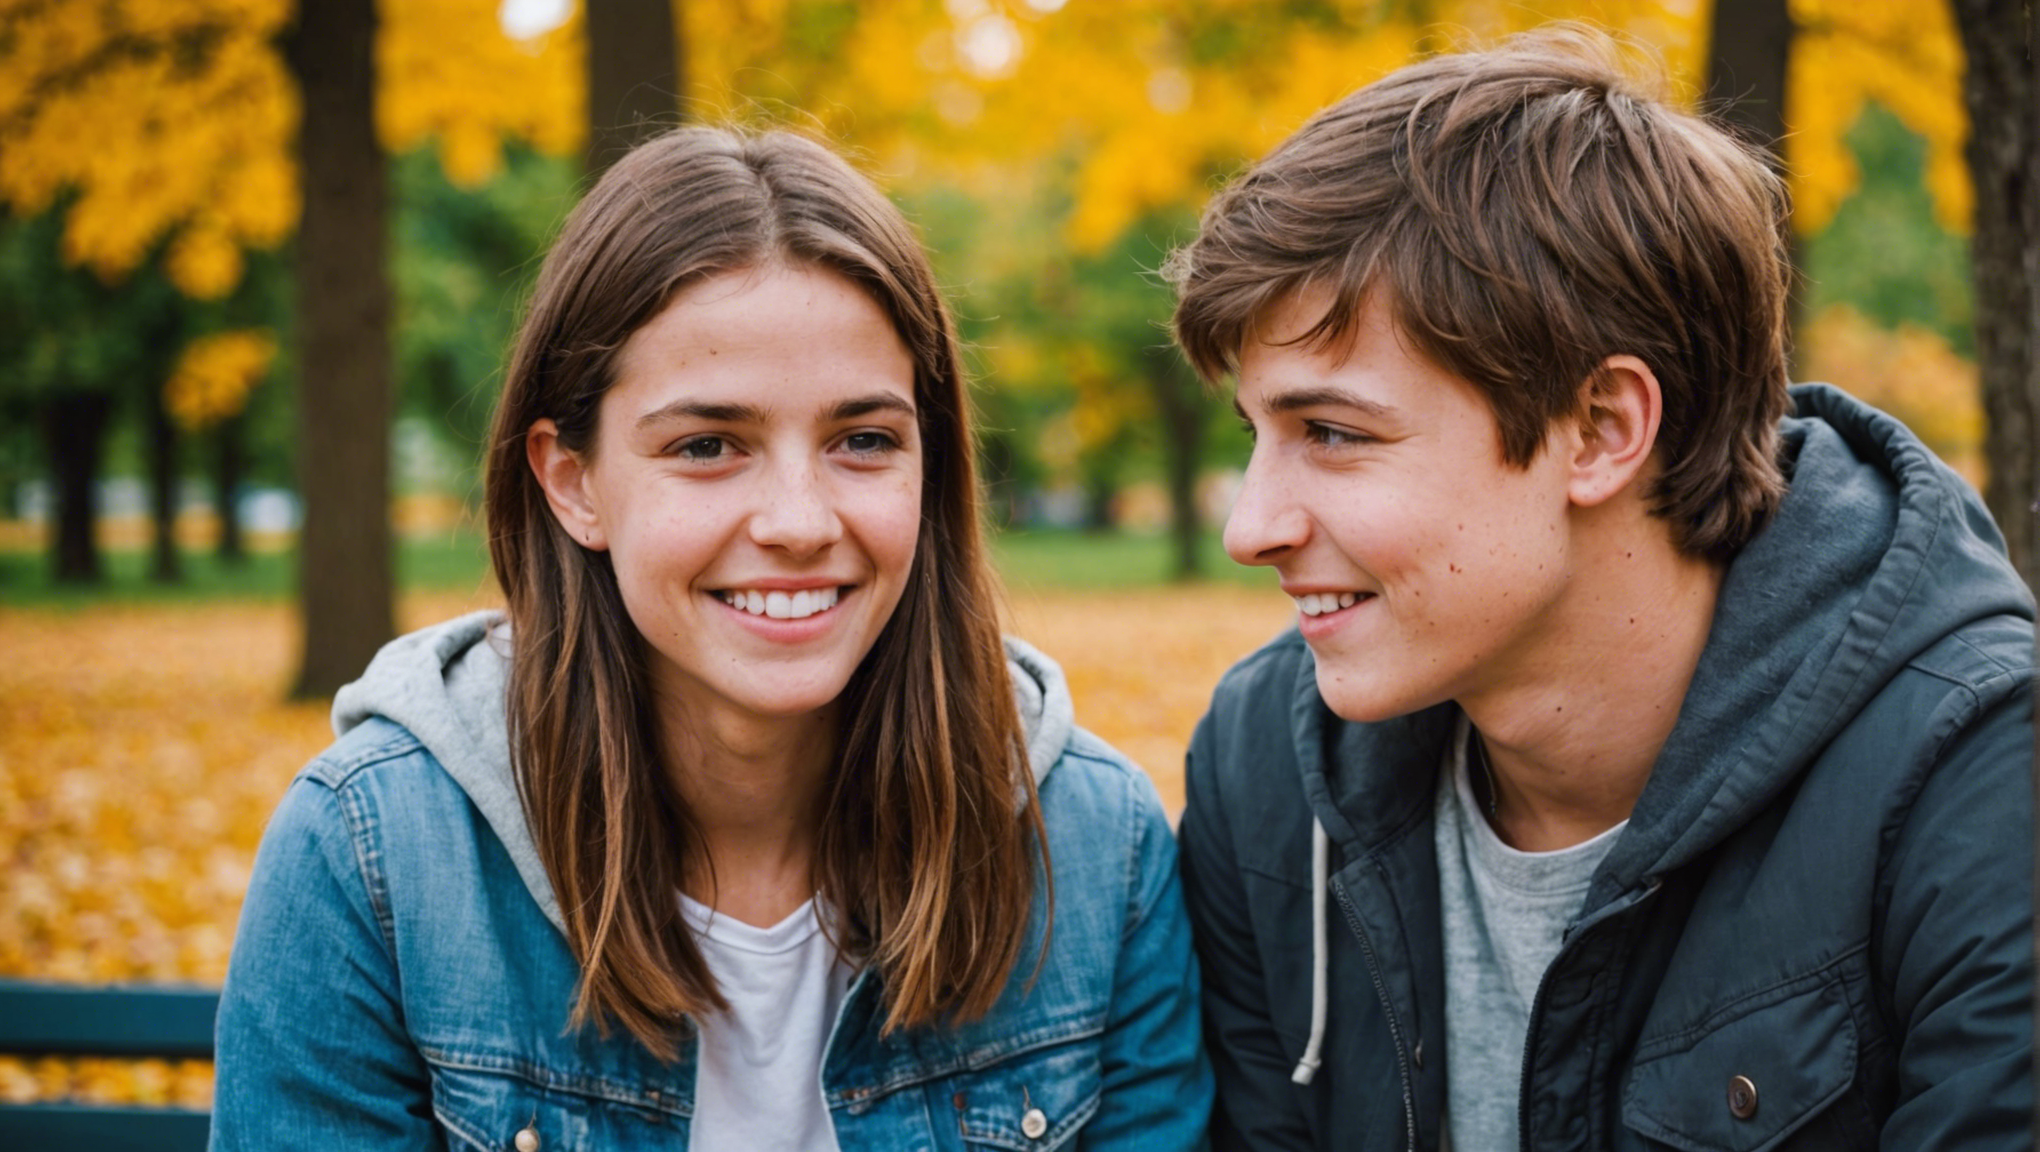 découvrez des conseils pour aider les adolescents à gérer les problèmes de couple plus facilement. apprenez des stratégies pour les accompagner dans cette étape importante de leur vie.